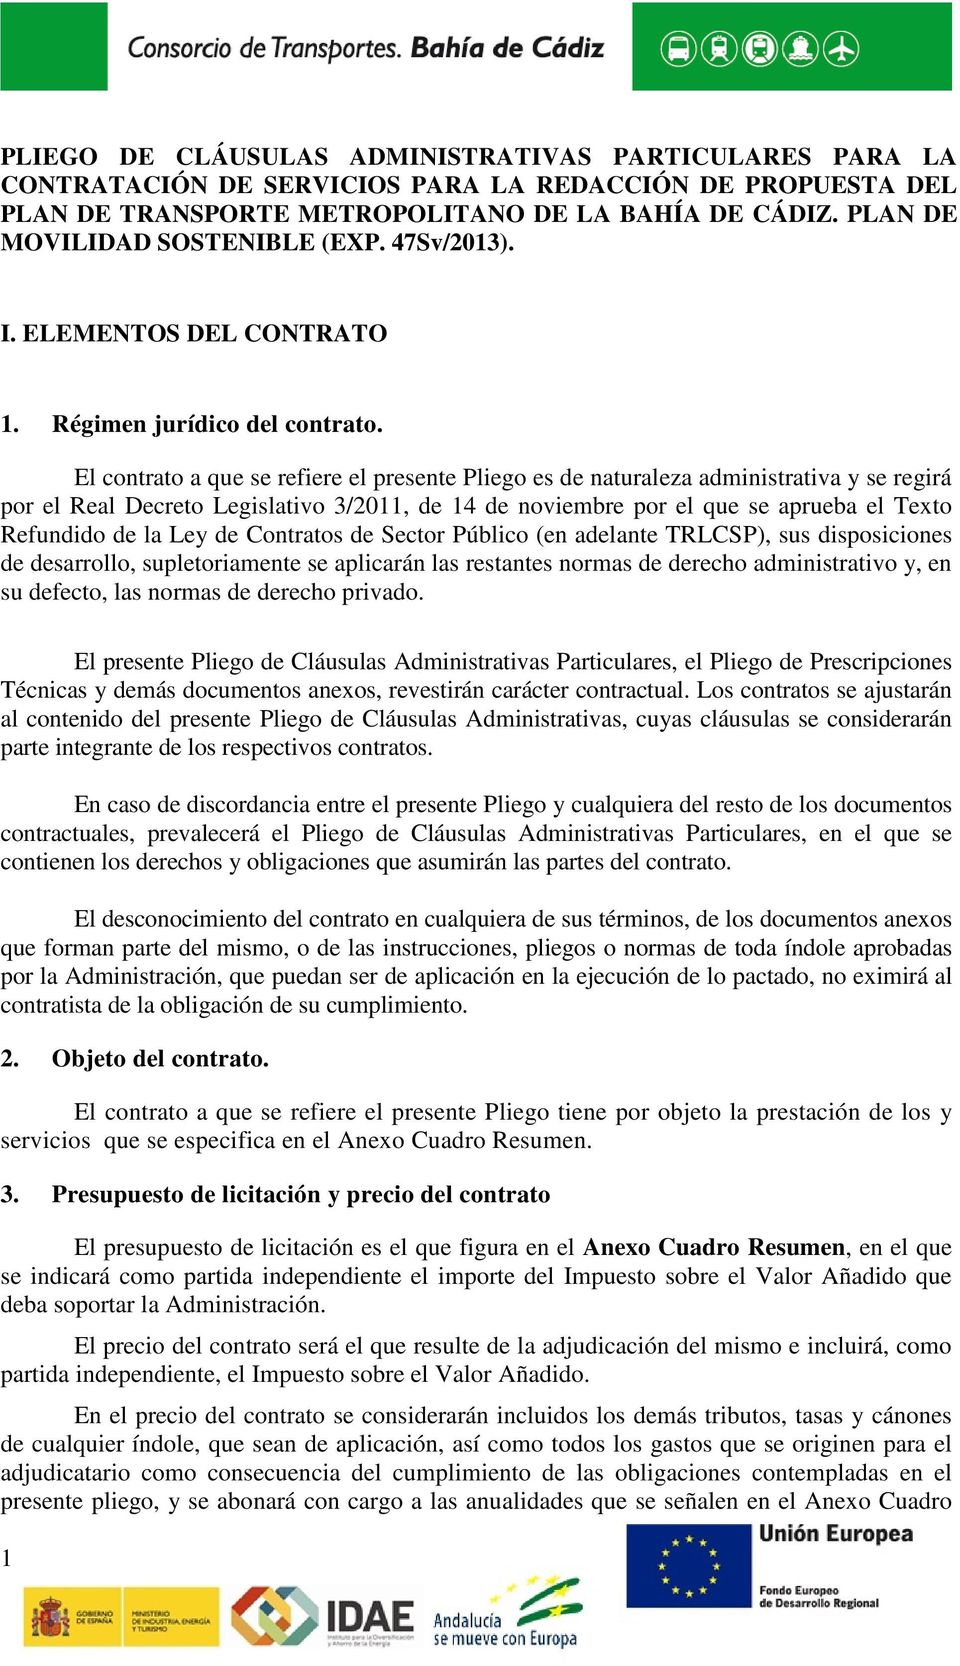 El contrato a que se refiere el presente Pliego es de naturaleza administrativa y se regirá por el Real Decreto Legislativo 3/2011, de 14 de noviembre por el que se aprueba el Texto Refundido de la